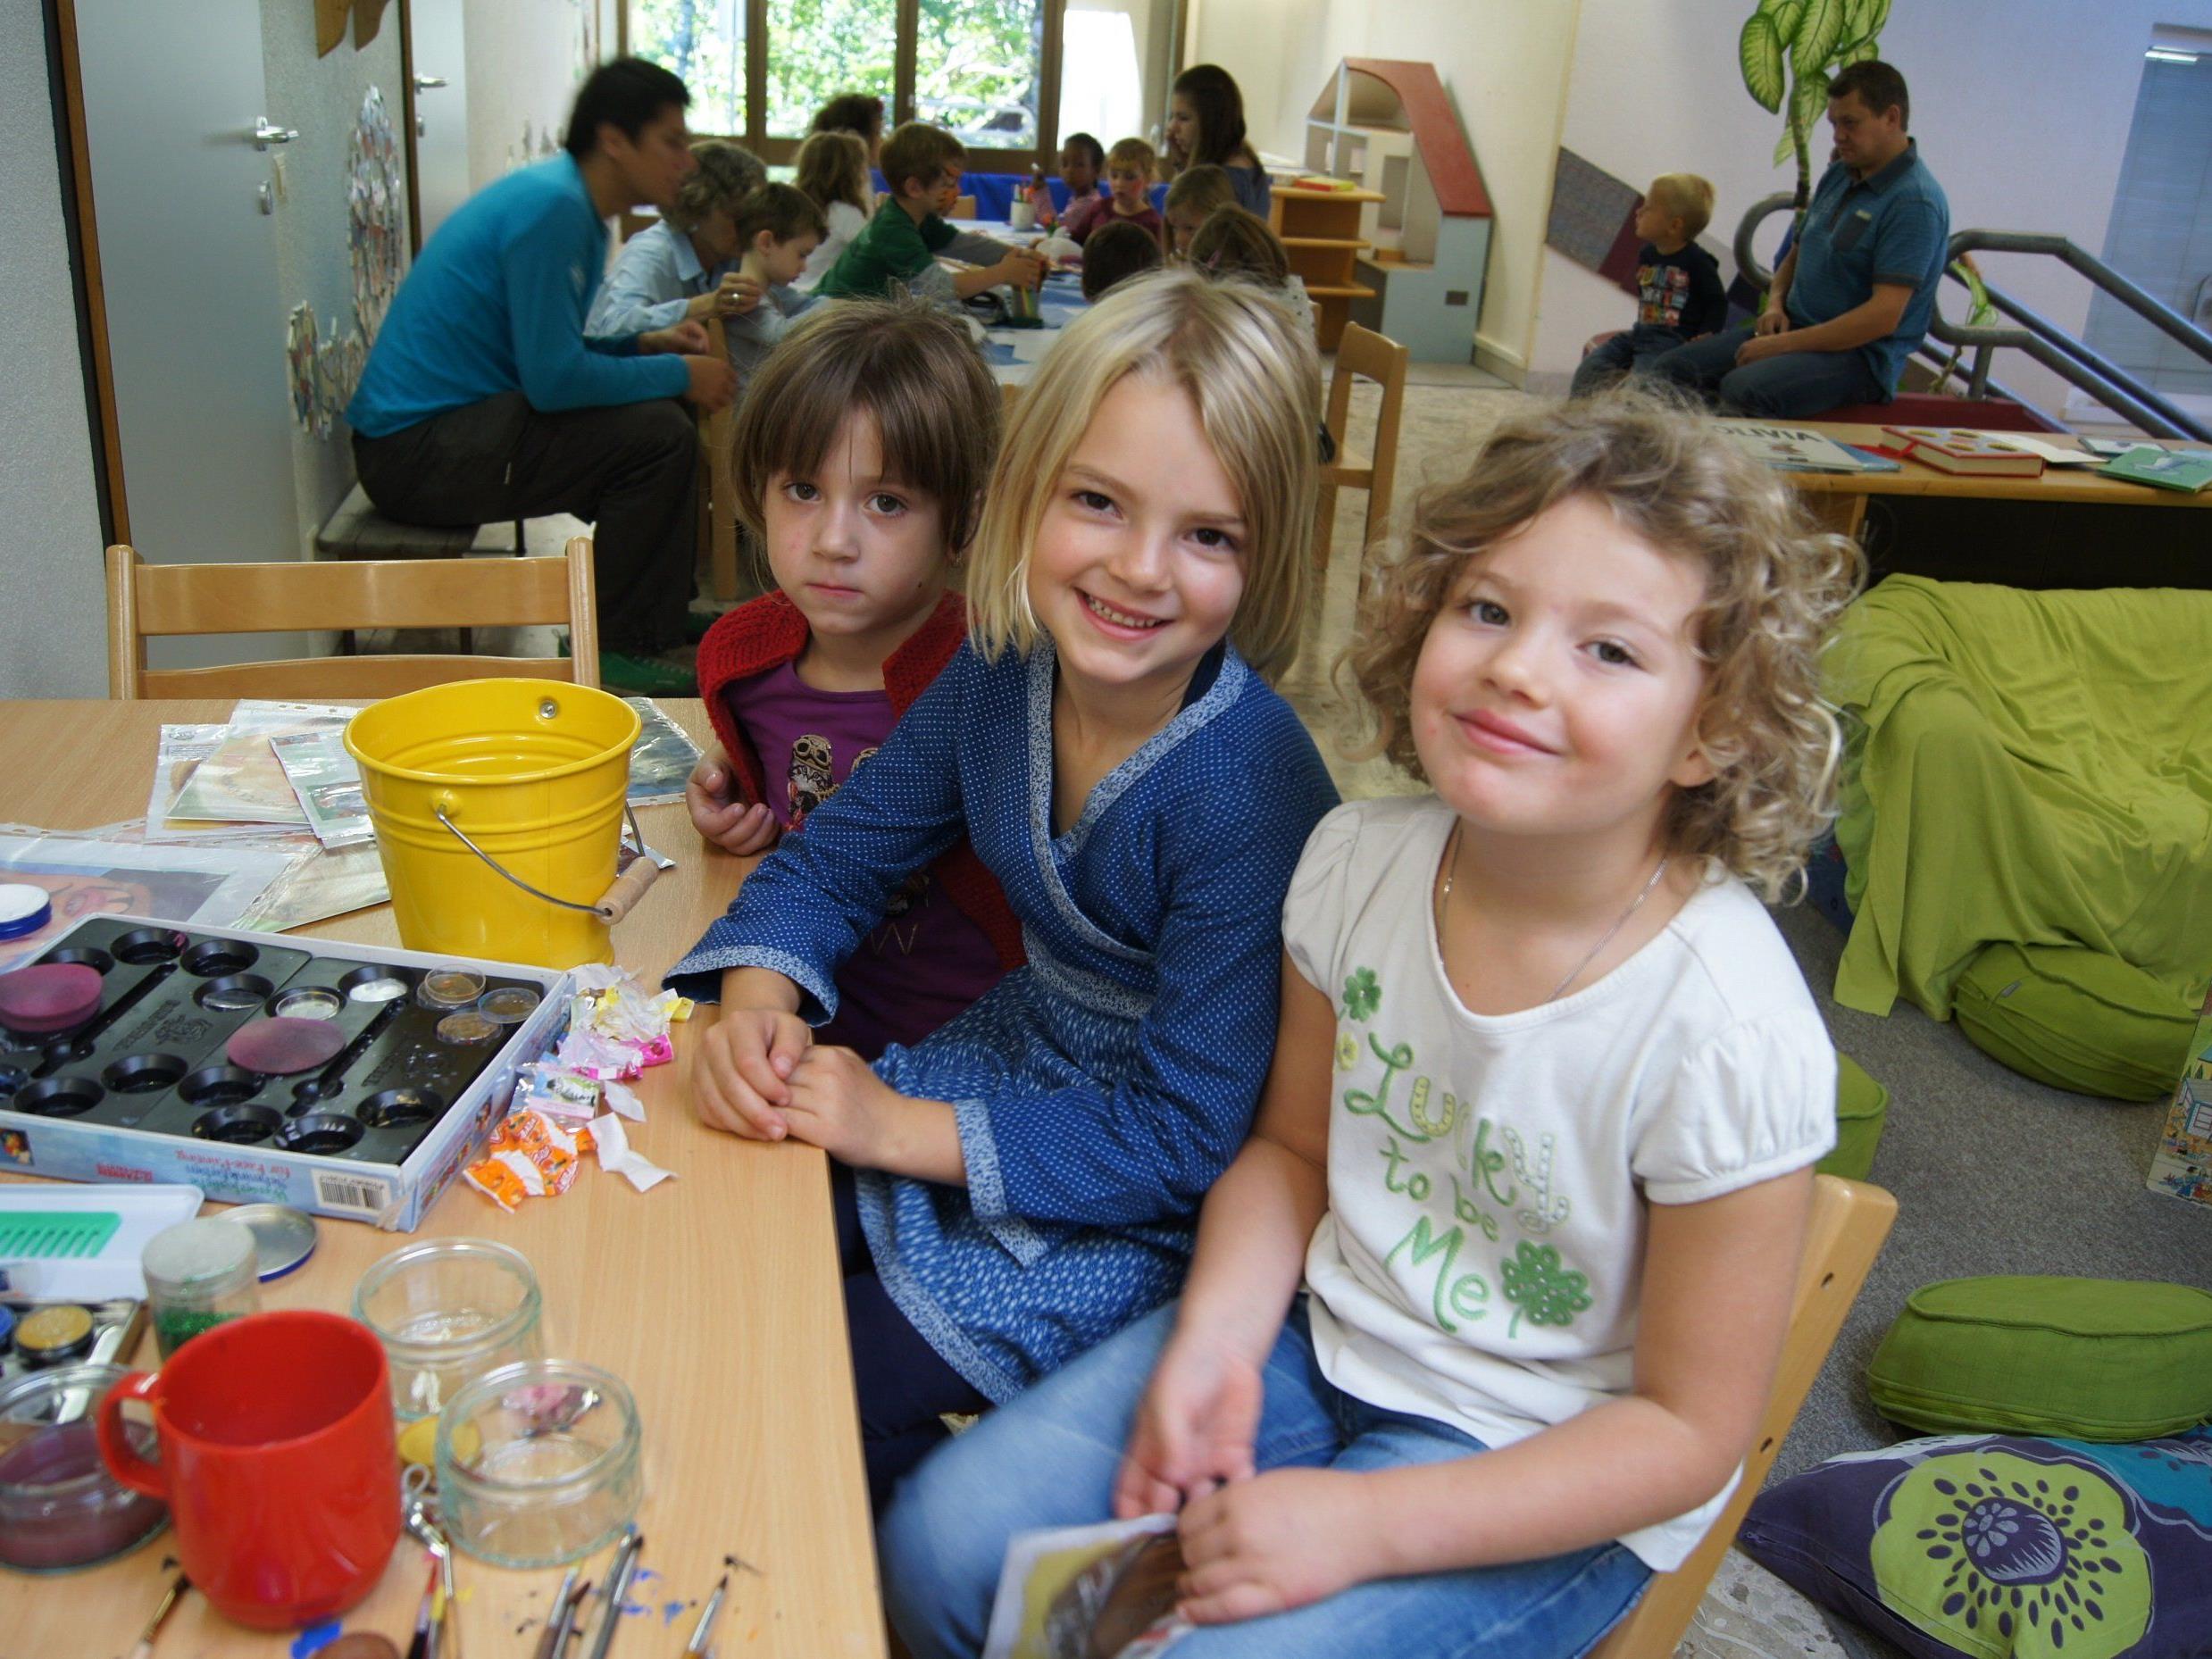 Mitanand luoga, reda und losa beim Familientreffpunkt im Weißacher Kindergarten.